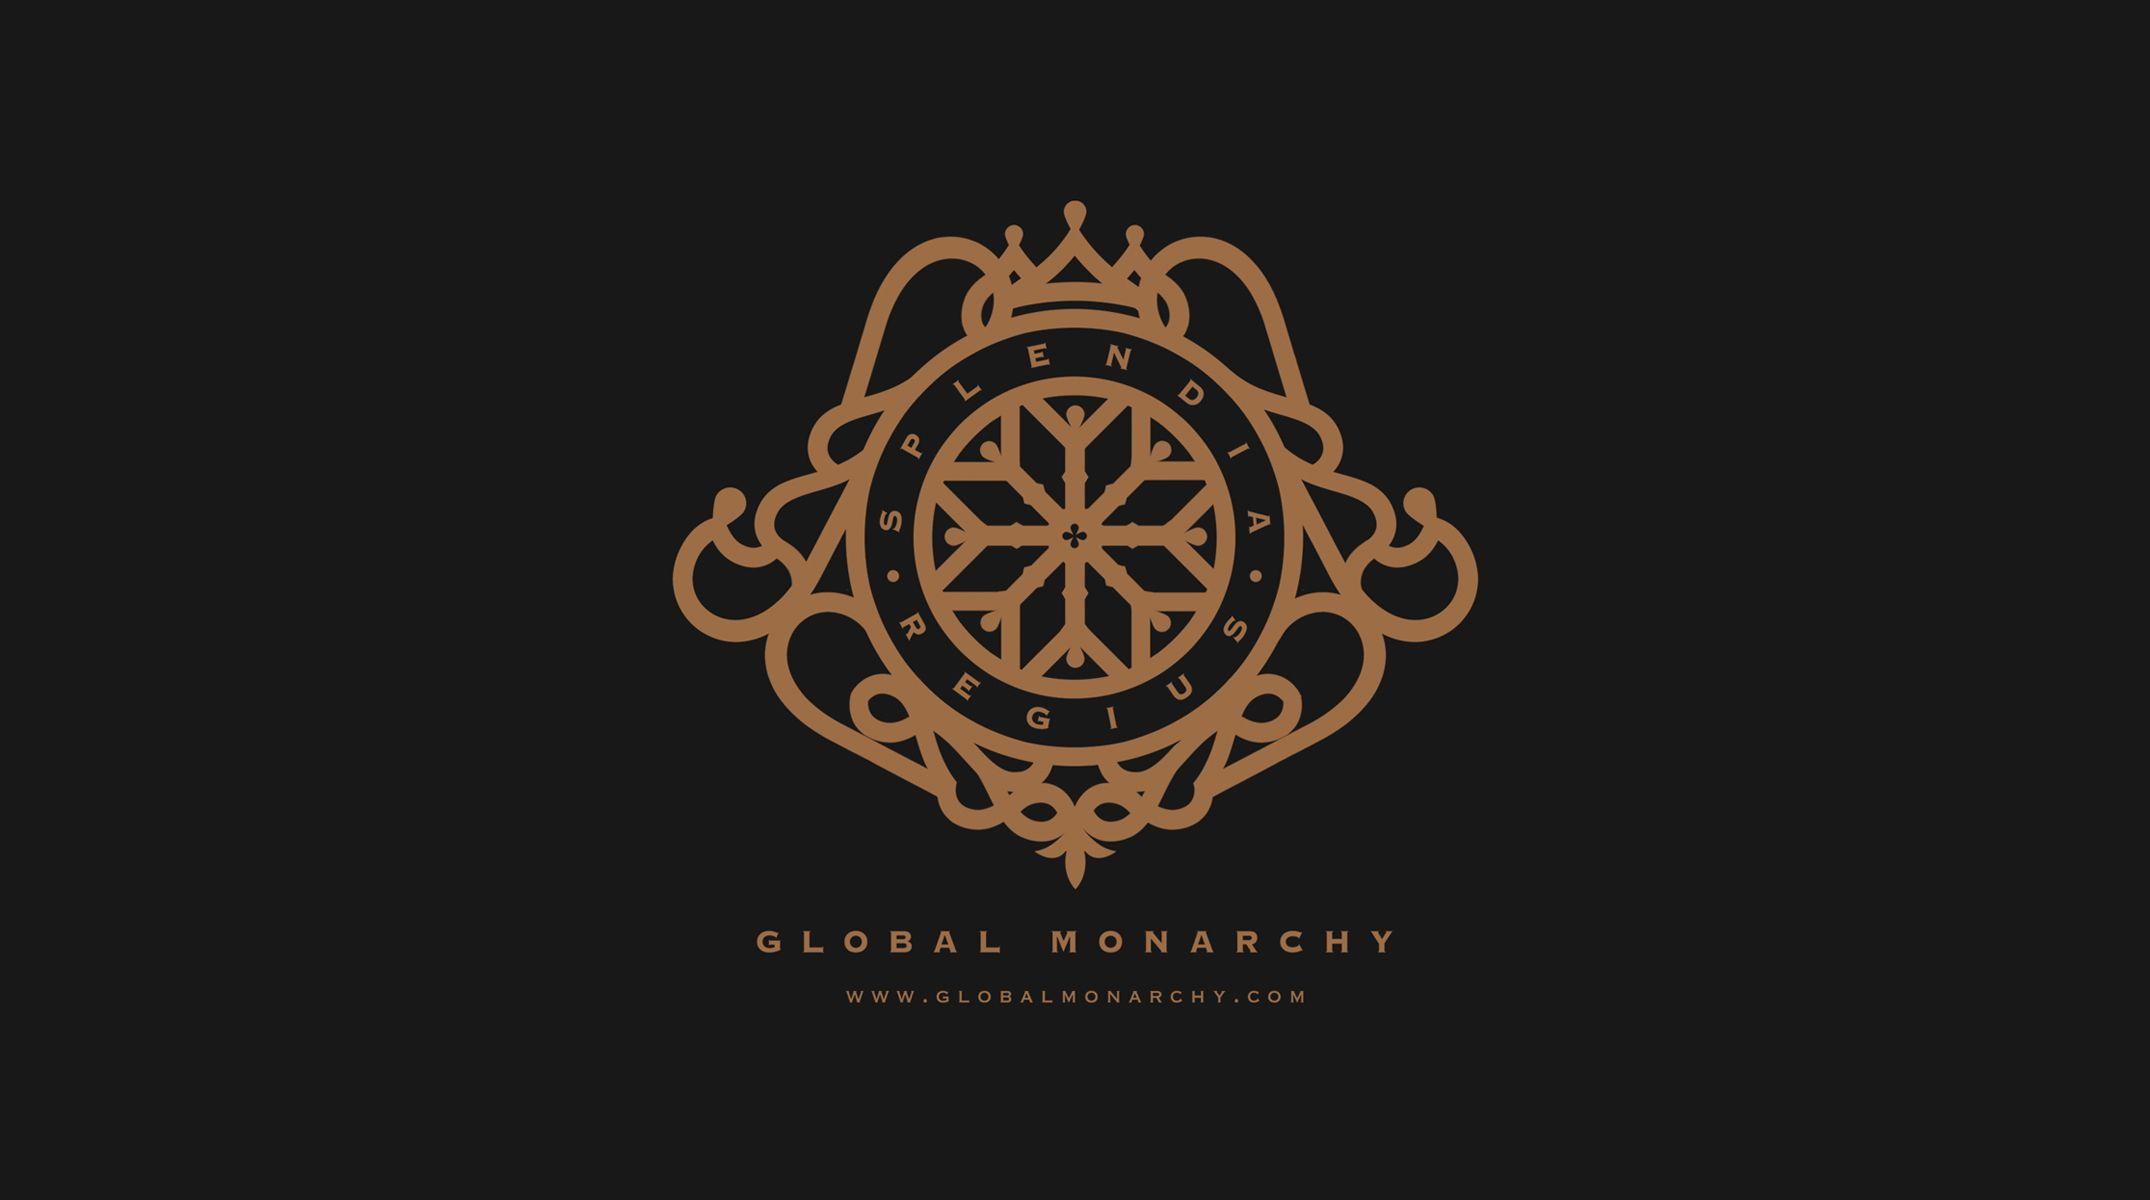 Monarchy Logo - Global Monarchy | AYSE Studio